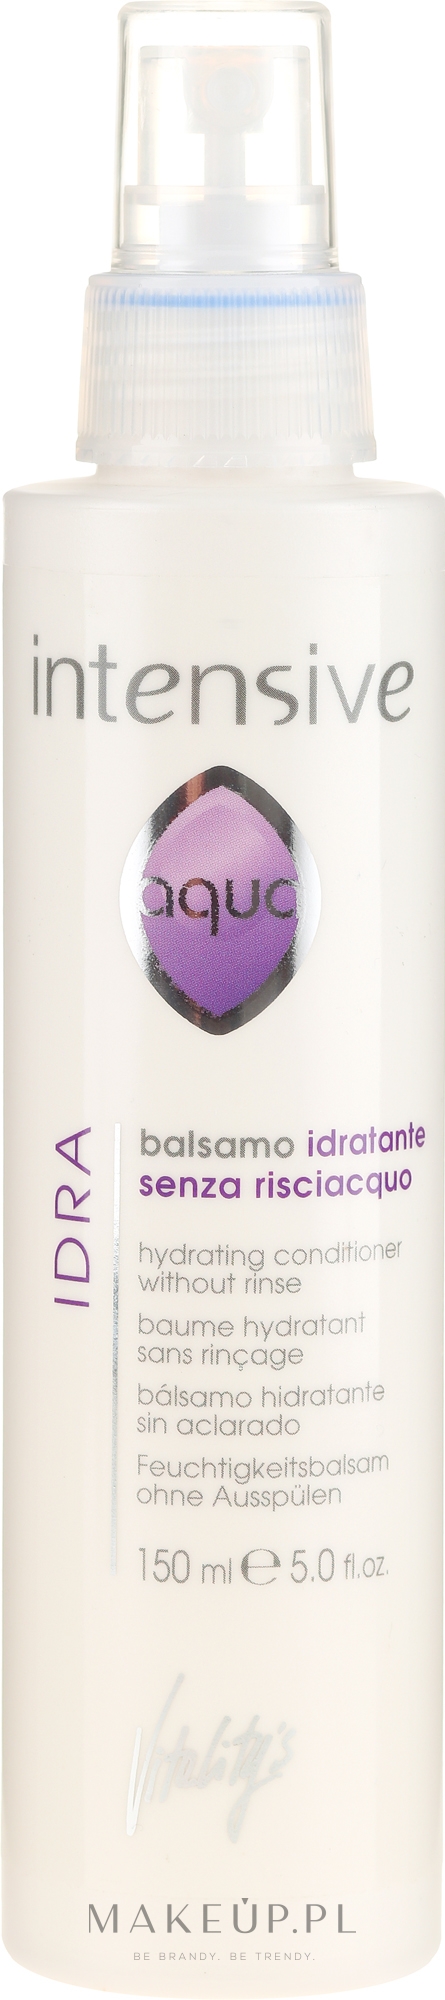 Nawilżający balsam leczniczy do włosów - Vitality's Intensive Aqua Hydrating — Zdjęcie 150 ml